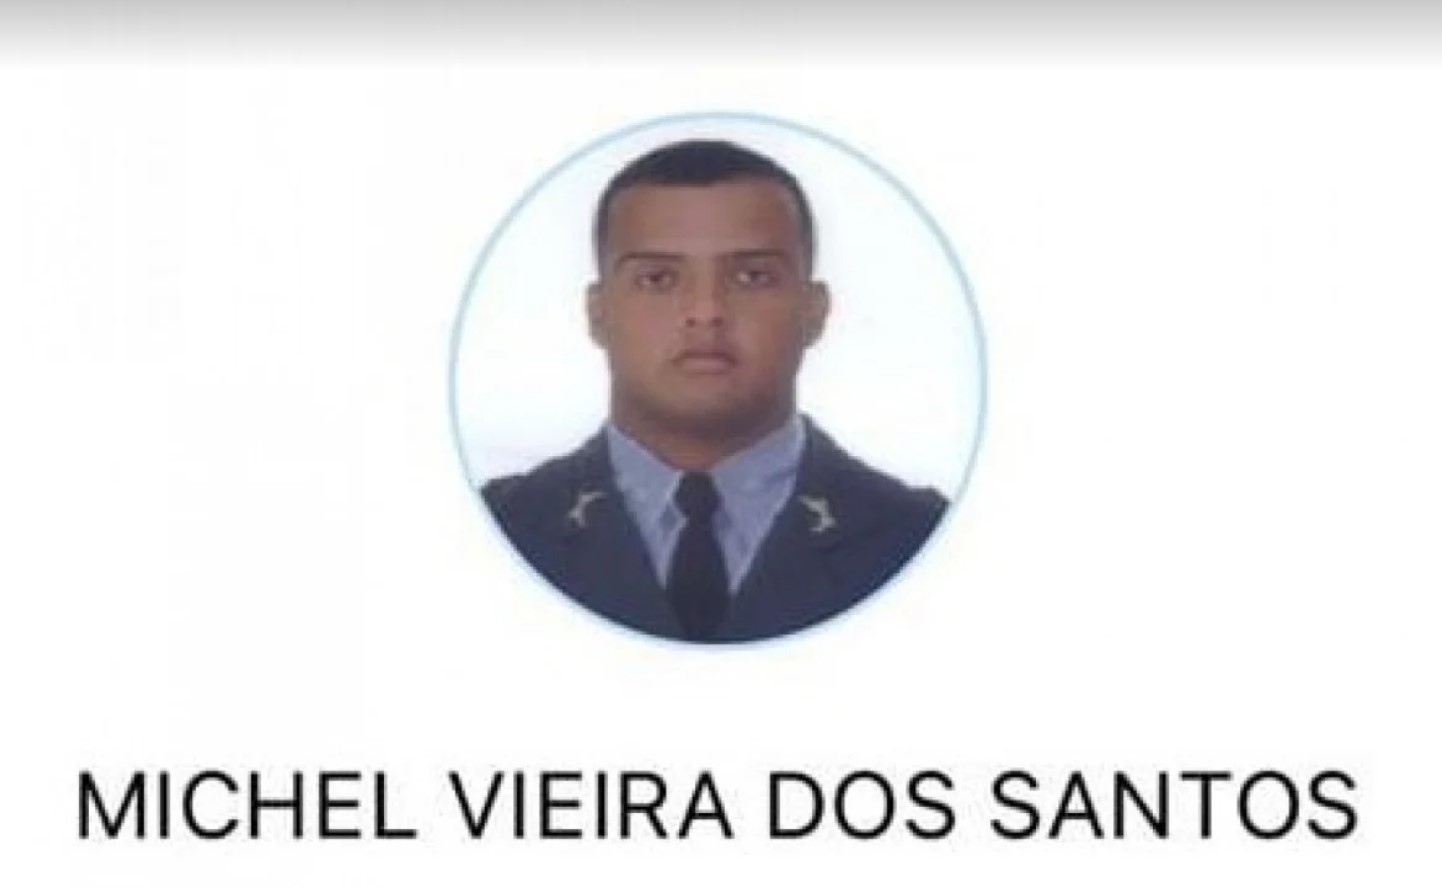 Polícial Militar morto em São Gonçalo